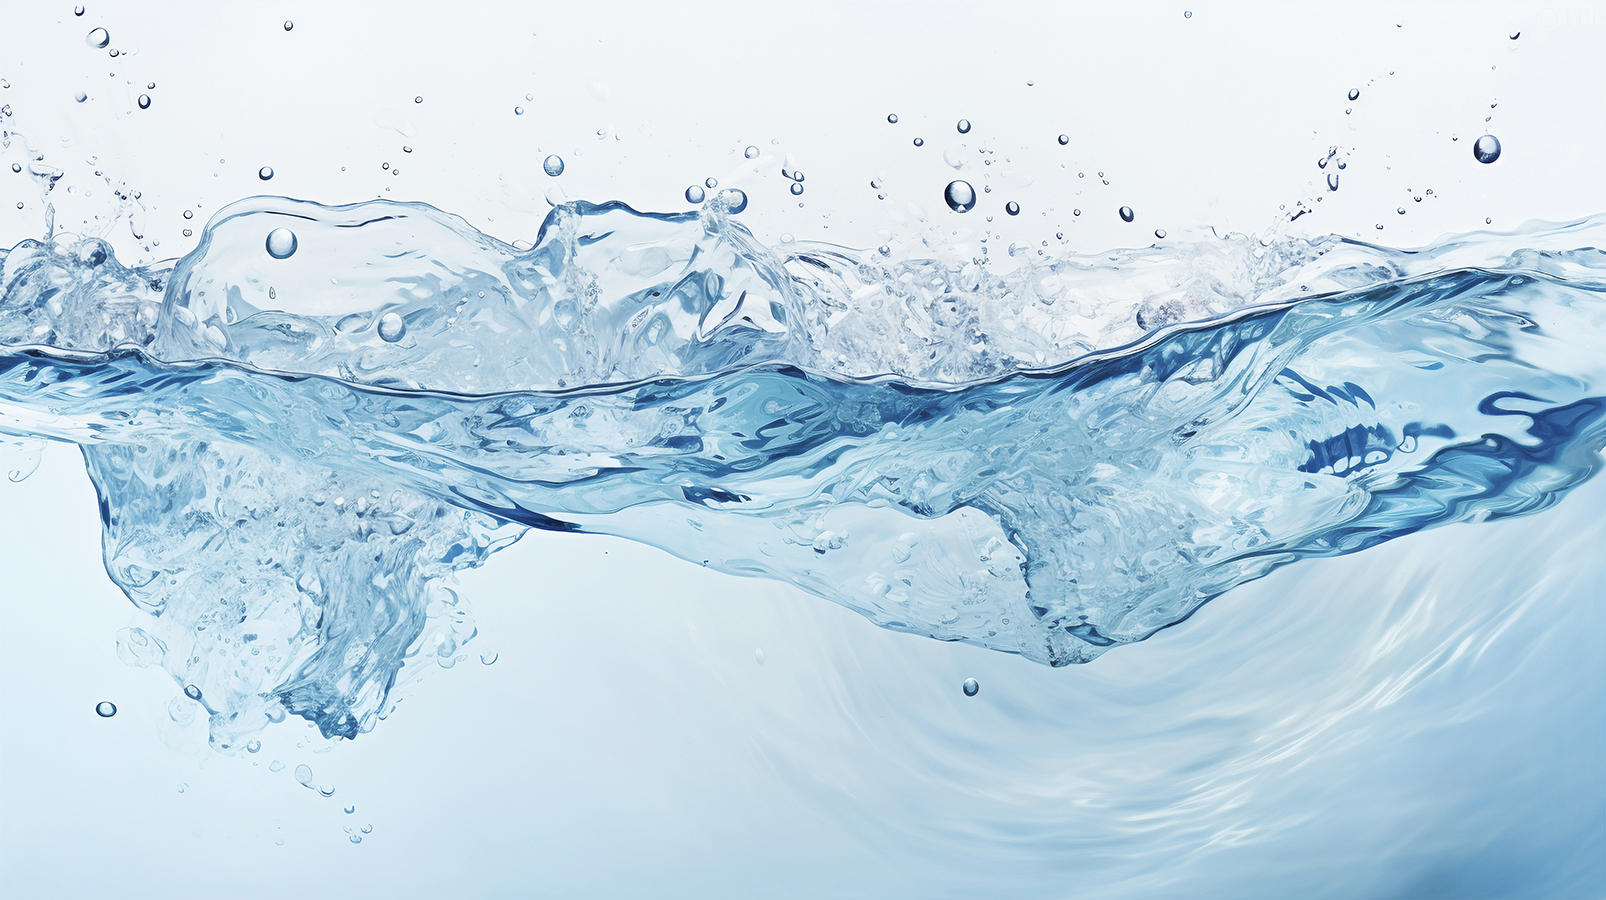 El hombre moderno usa 20 veces más agua que sus antecesores